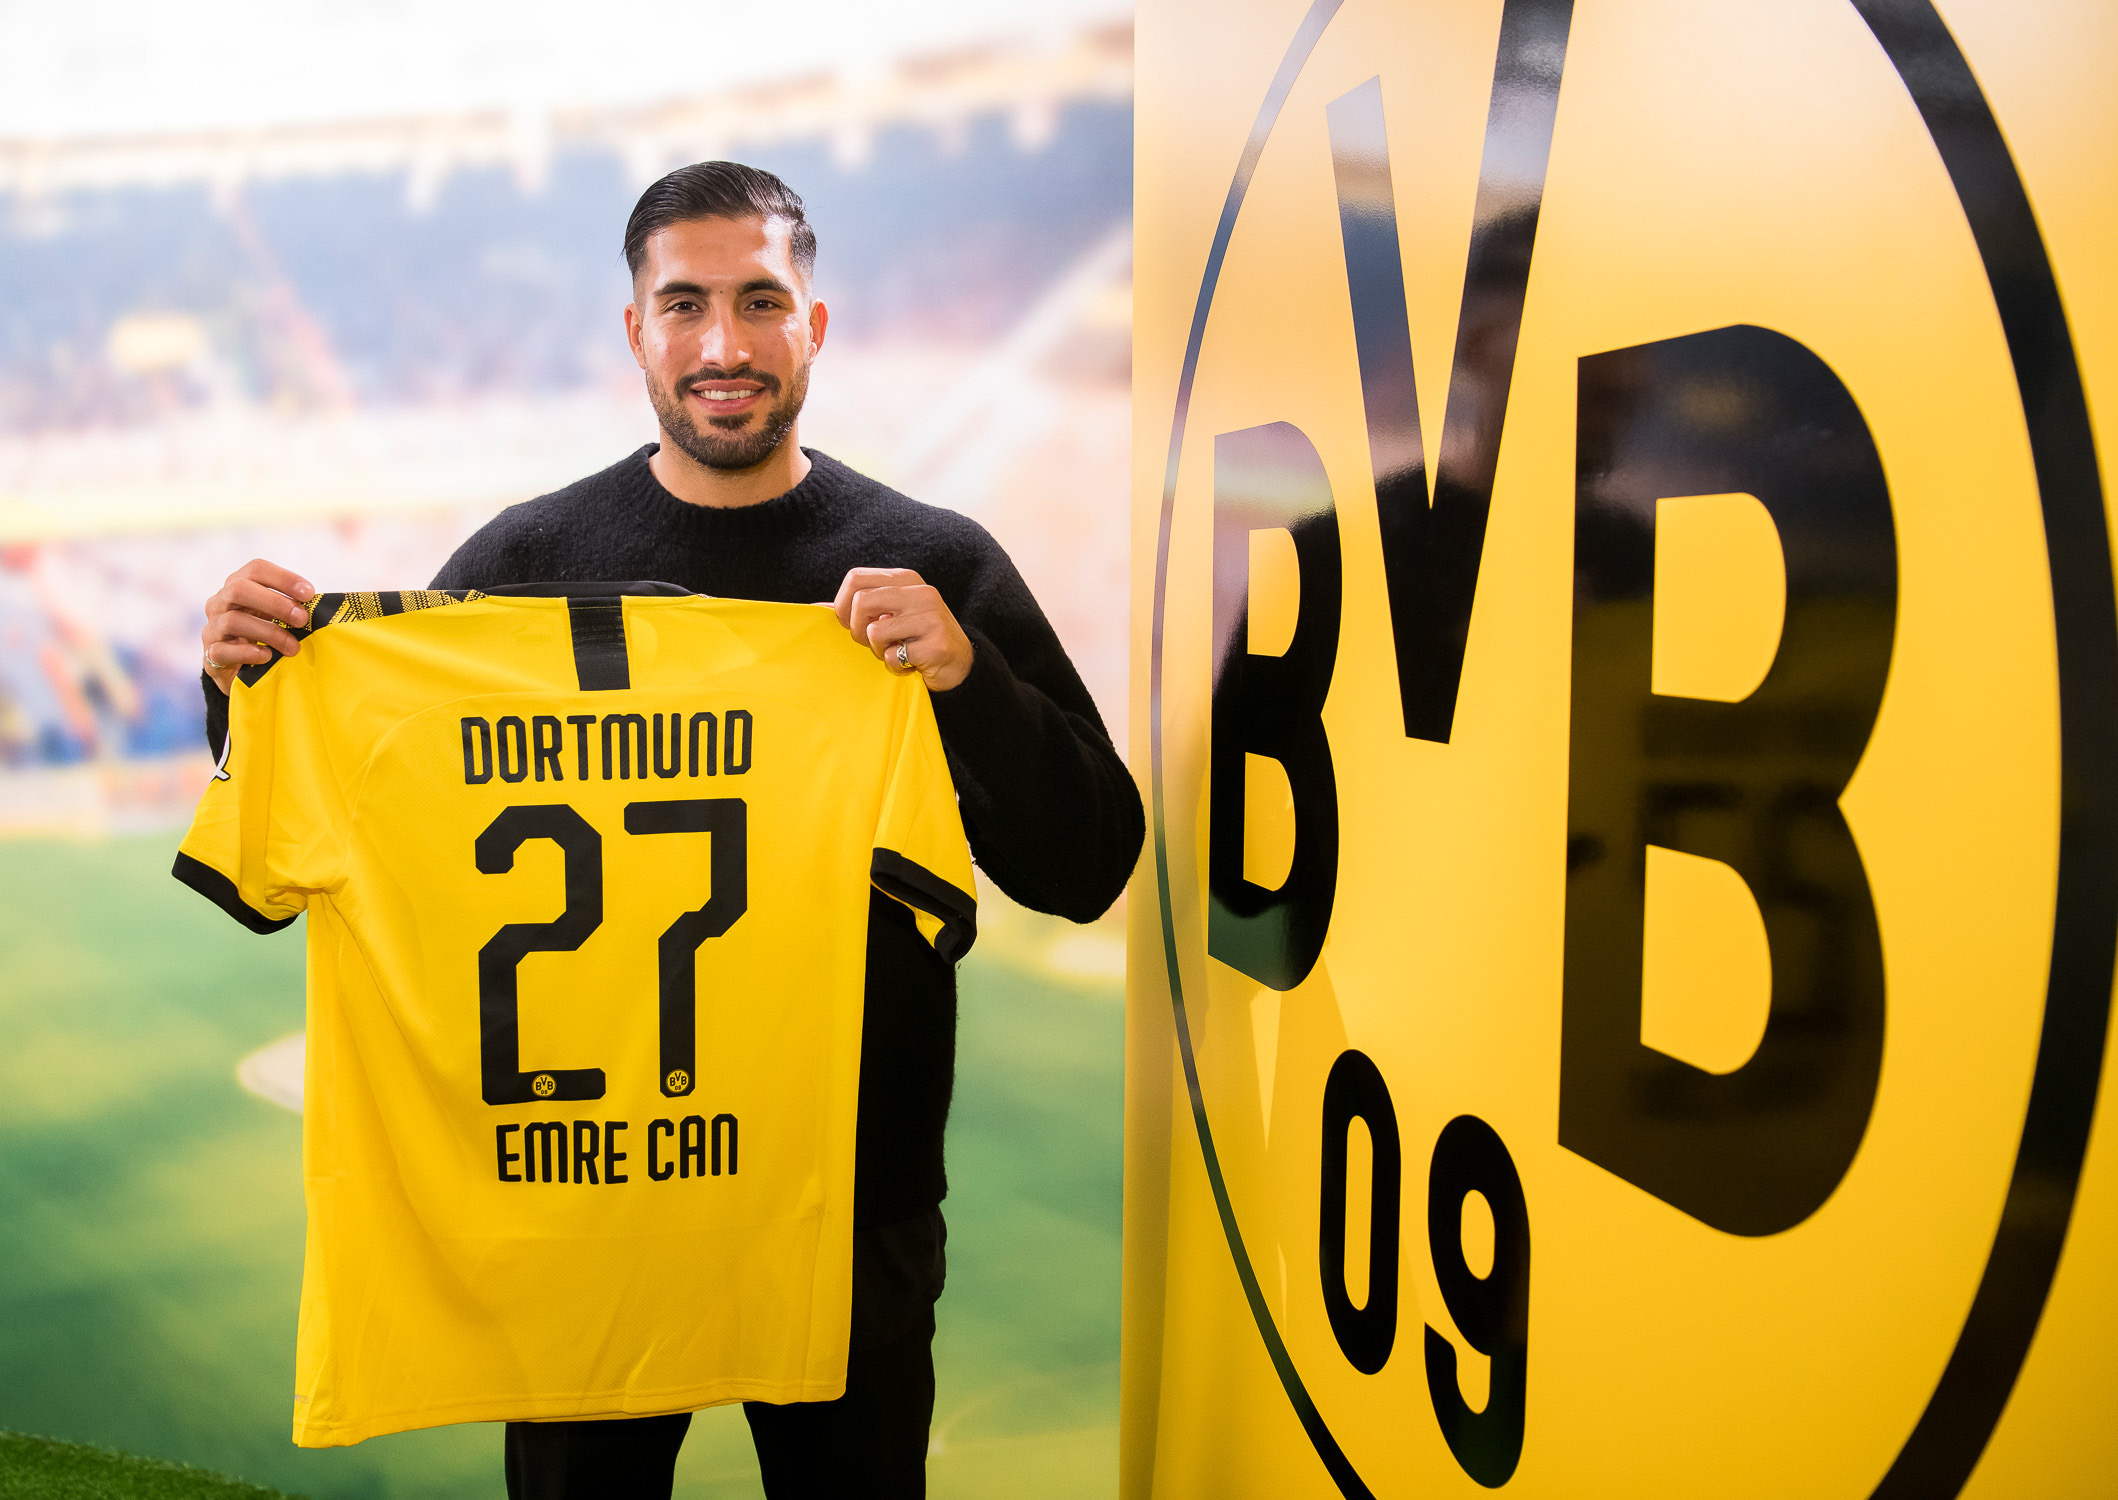 O Borussia Dortmund anunciou a contratação do meio-campo Emre Can, da Juventus, por empréstimo até o fim da temporada.